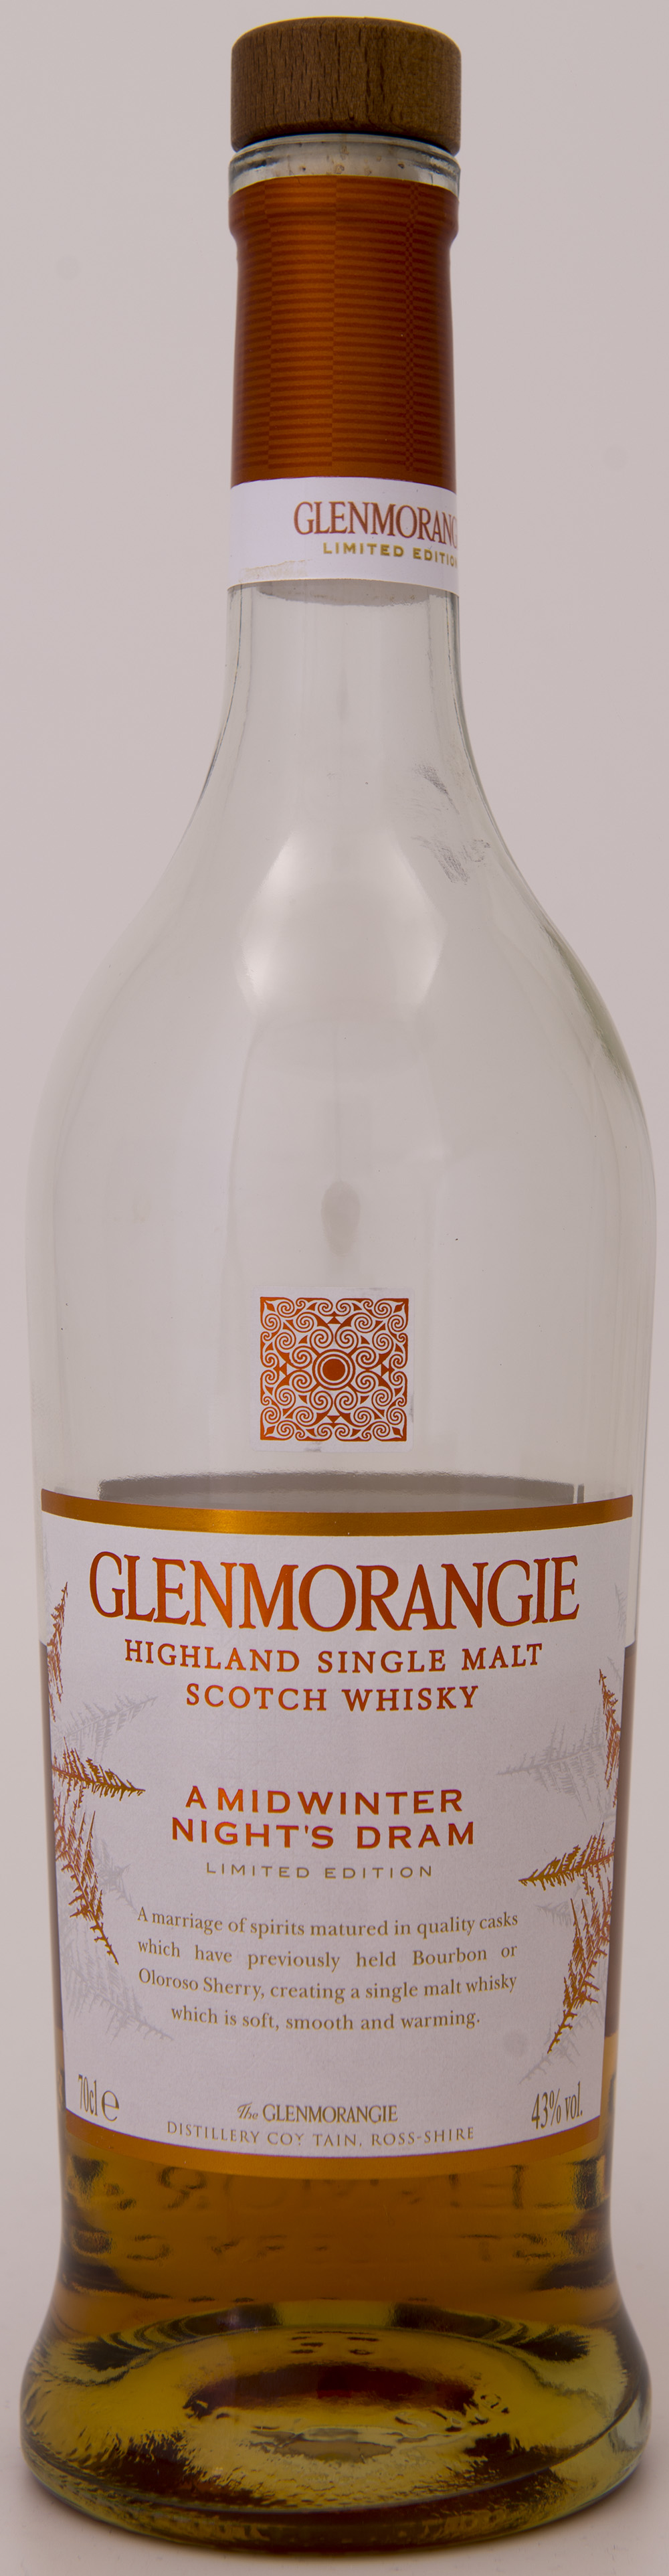 Billede: DSC_1615 - Glenmorangie A midwinter Nights Dream - bottle front.jpg